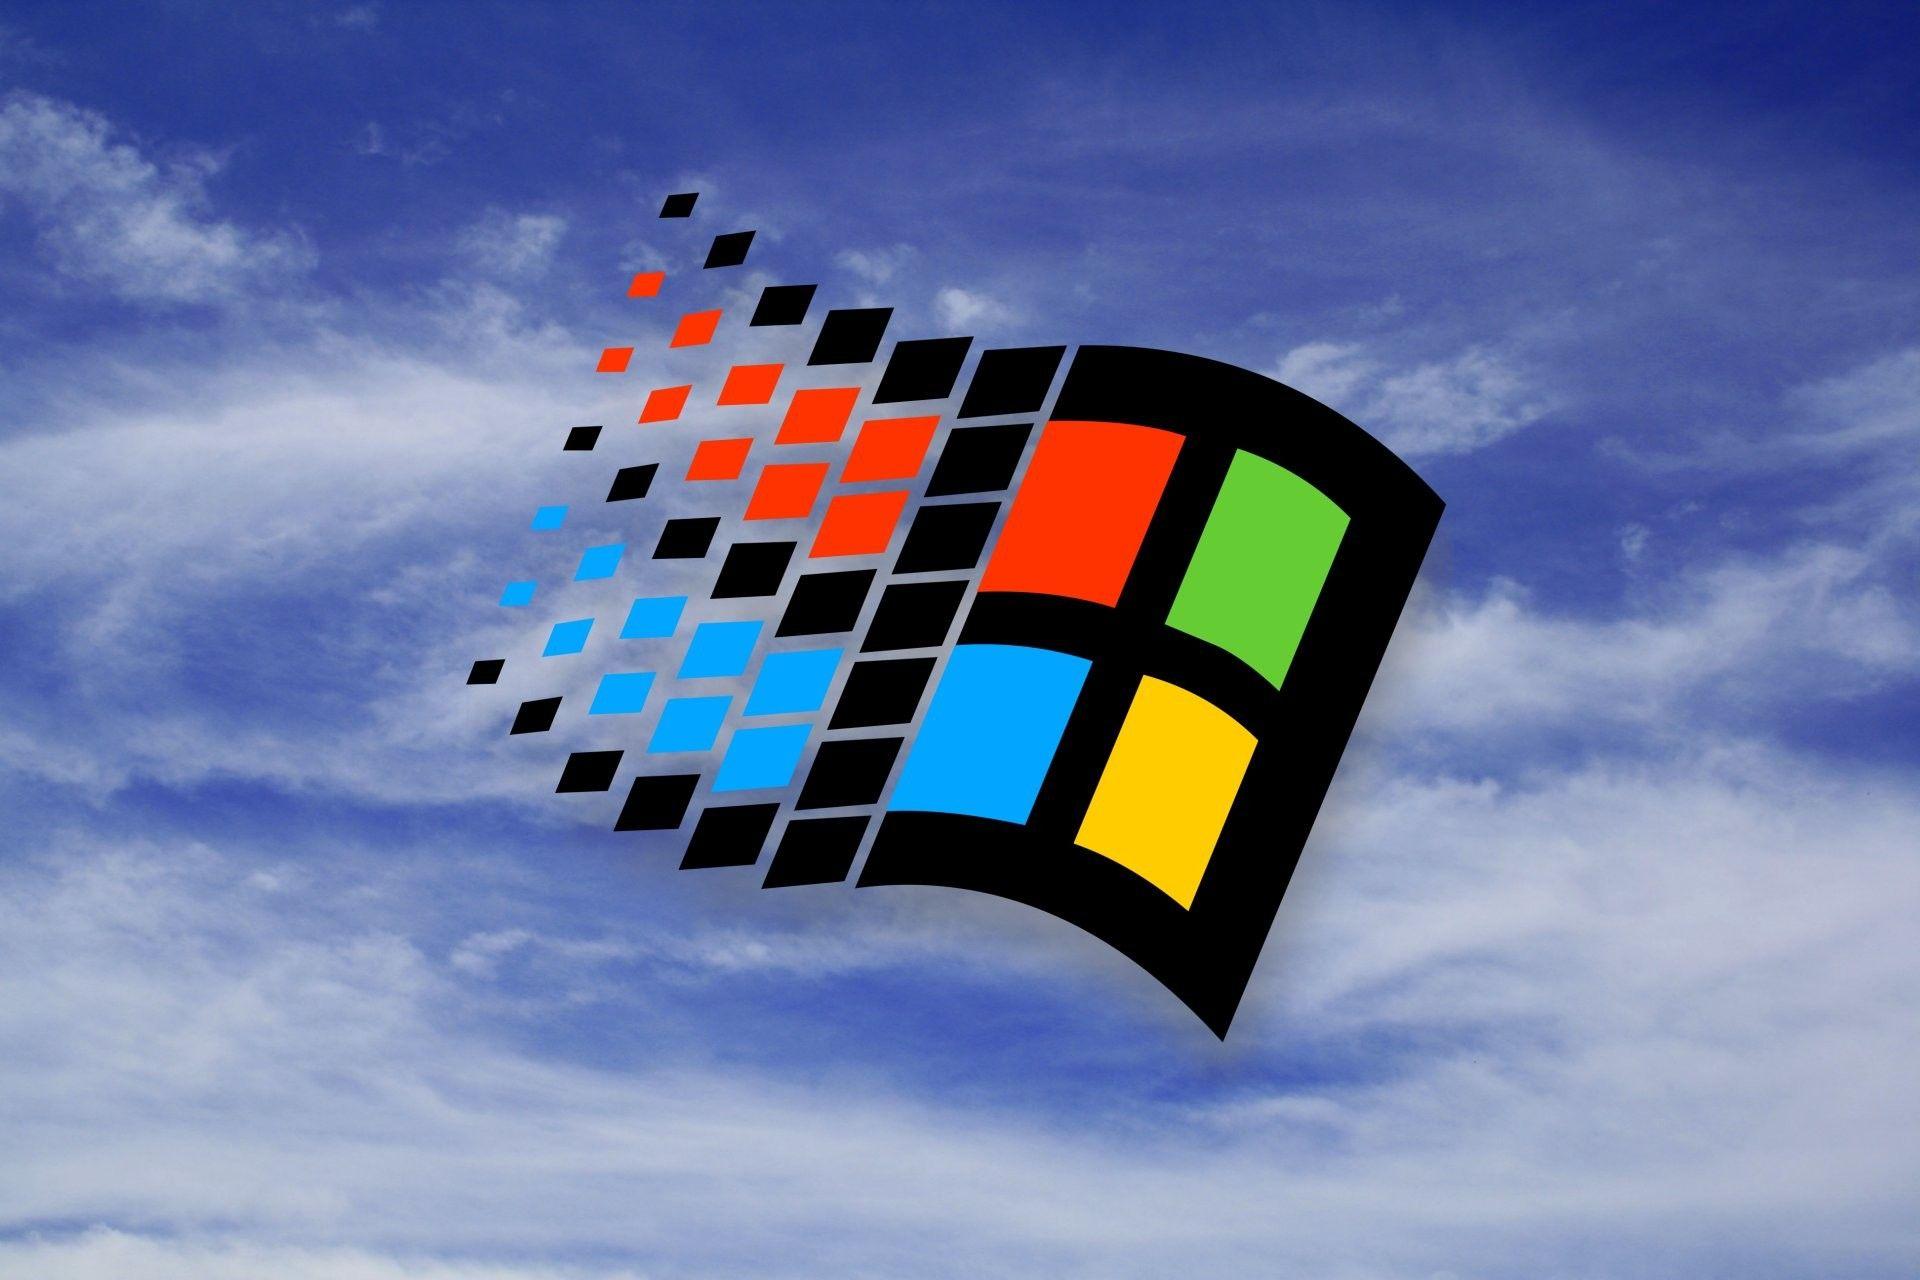 Những hình nền Windows 95 đầu tiên làm nên ký ức tuổi thơ của nhiều thế hệ người dùng máy tính. Giờ đây, bạn có thể tìm lại những bức hình đó và tái hiện lại ký ức tuổi thơ bằng các mẫu hình nền Windows 95 mang đậm nét hoài niệm.